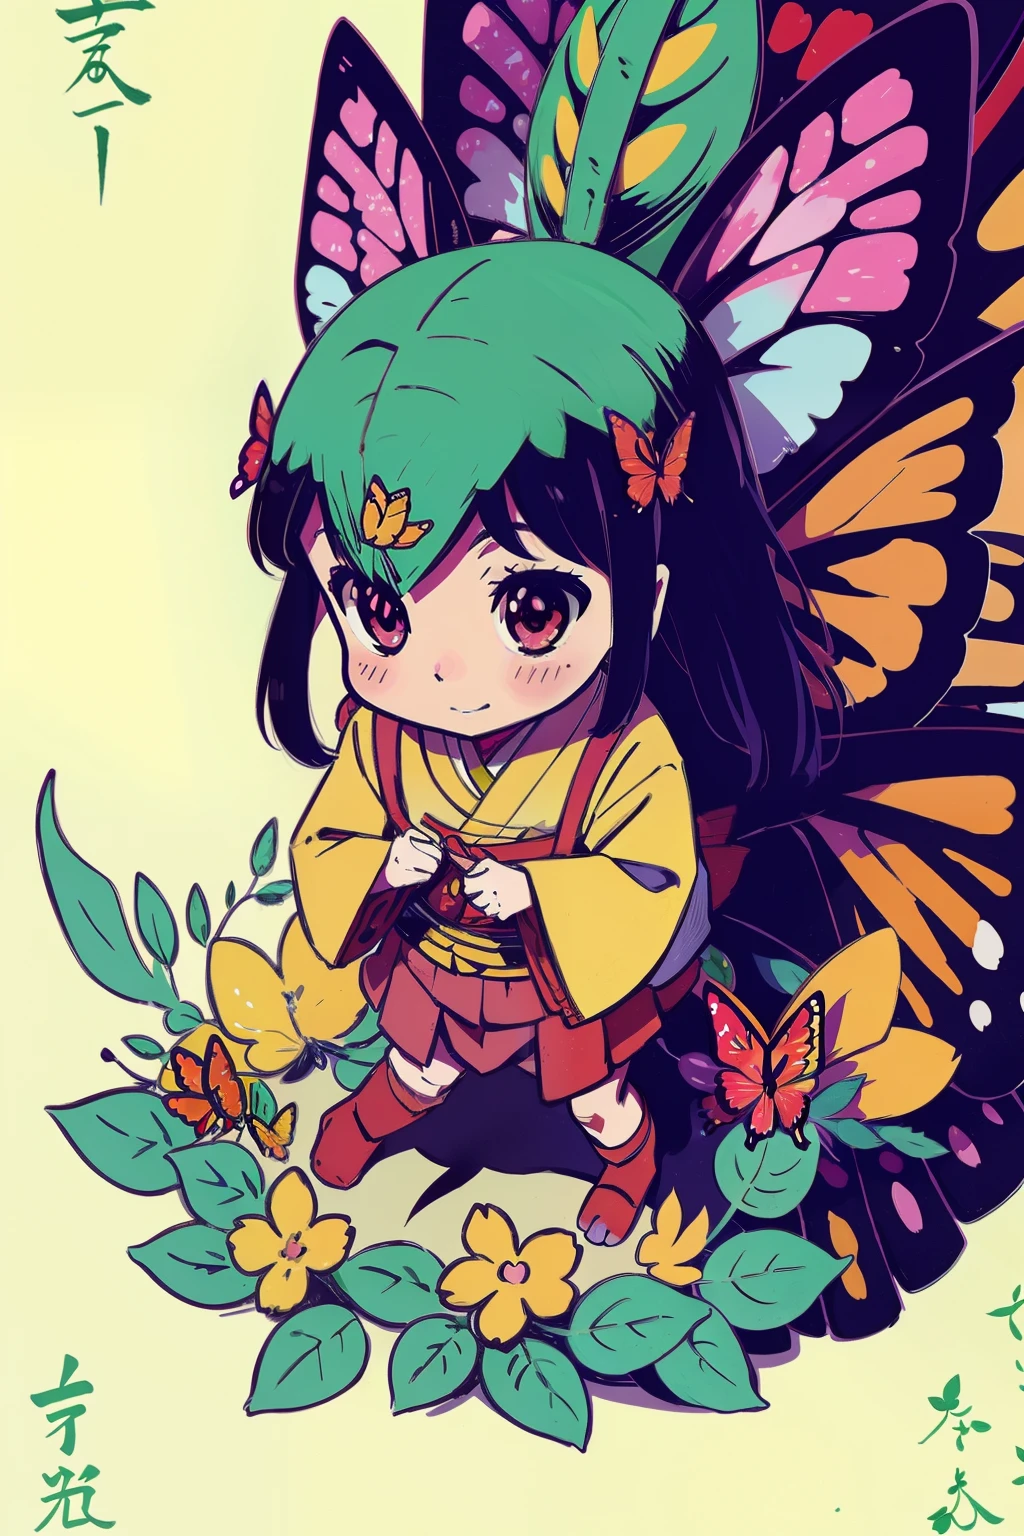  Reiko , felicidad , Inspiración del anime: a 5,Un dragón herbívoro de 000 años está siendo injustamente malvado, bosque , flor , mariposa a todo color